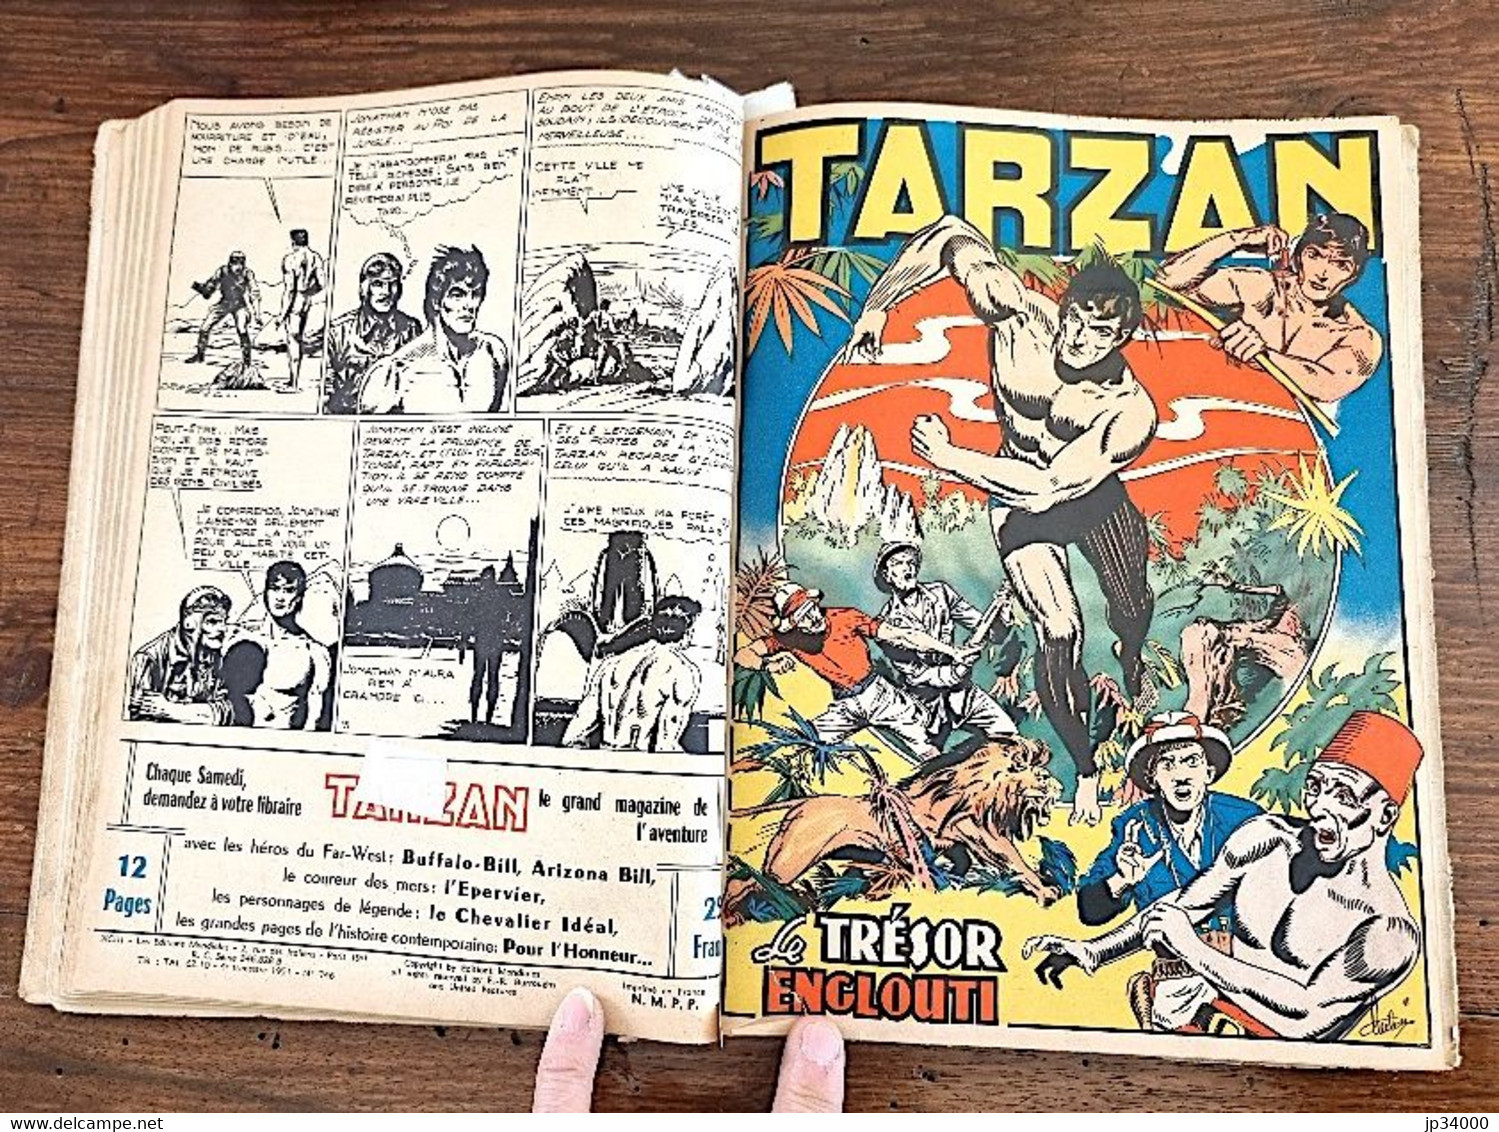 TARZAN Recueil n°9 contenant les n°89 à 98 (Collection s1  publiée en 1951 ) BE